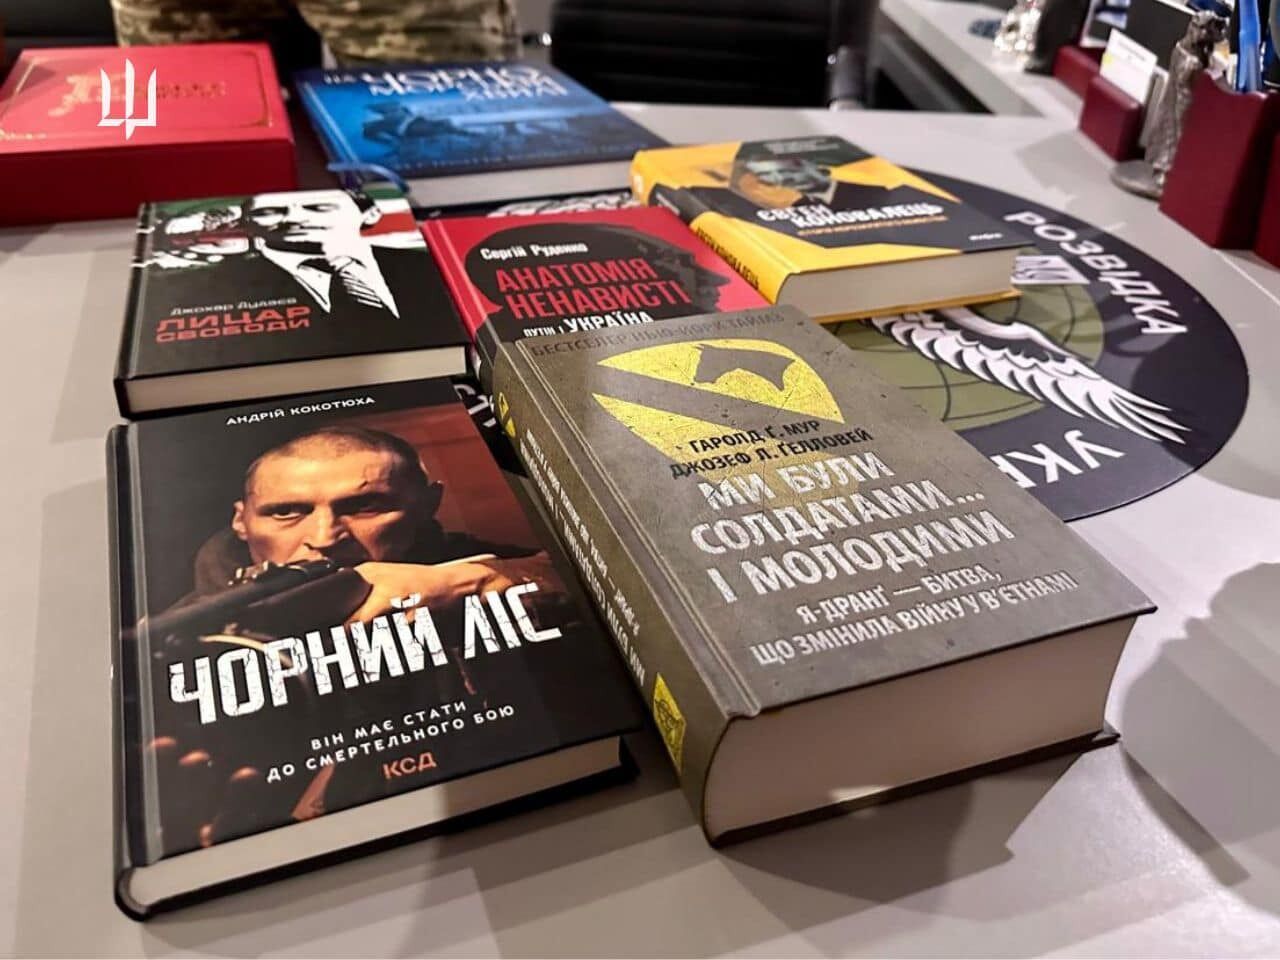 Буданов показал книги, которые планирует прочесть: благодарность украинским литераторам за вдохновение